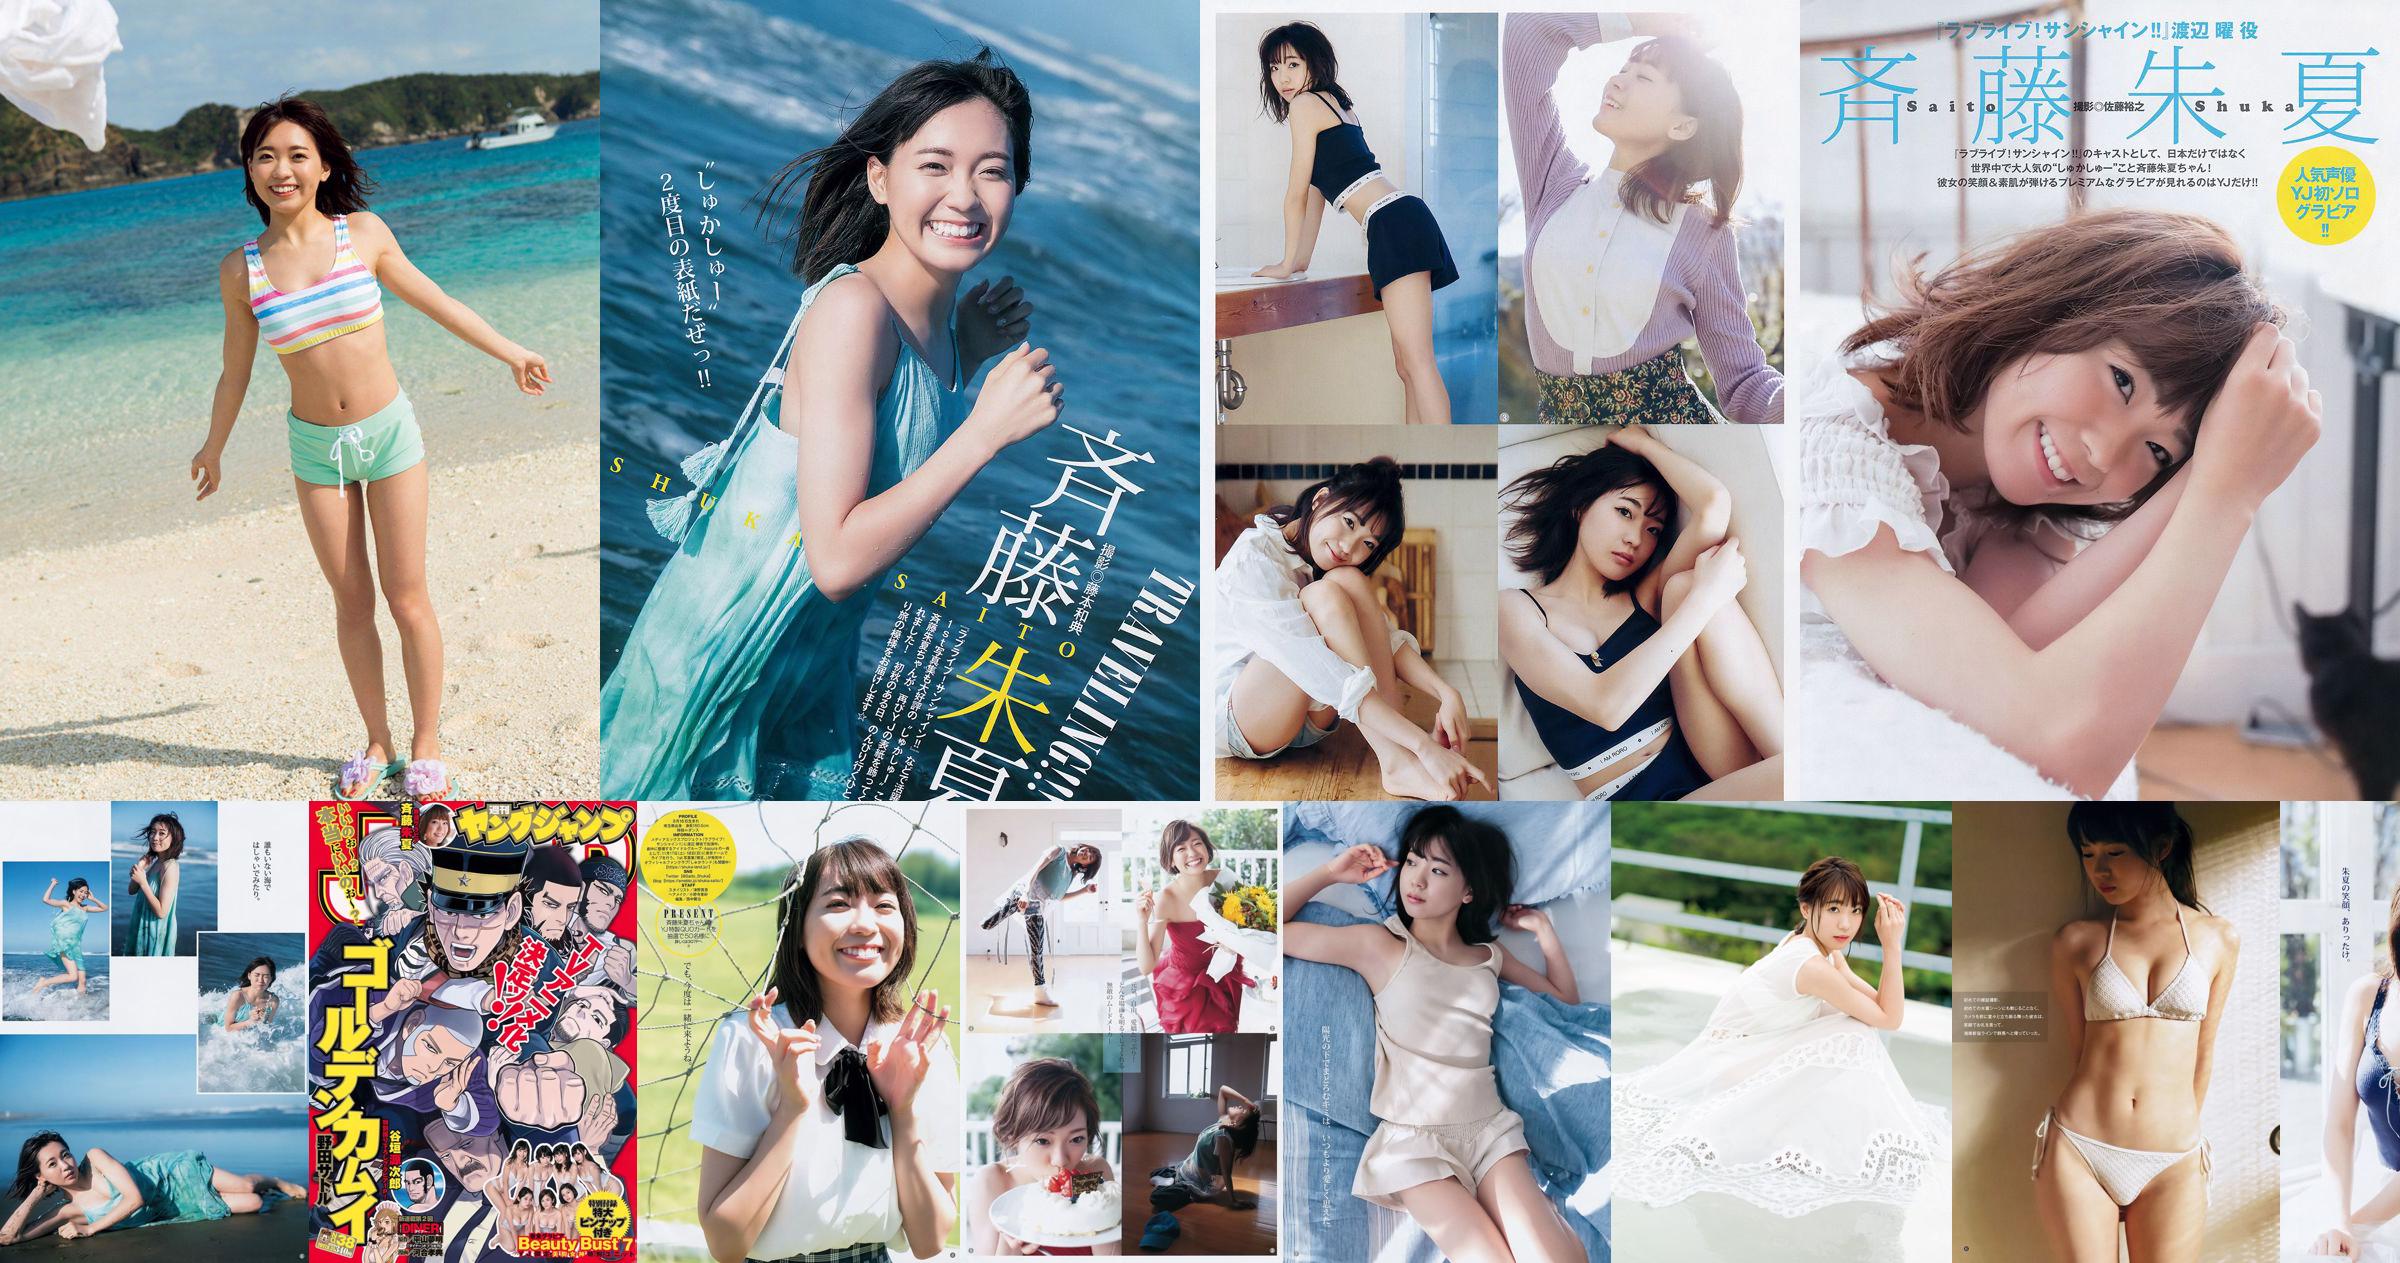 Shuka Saito Beauty Bust 7 [Weekly Young Jump] 2017 No.38 Photo No.538ce7 Page 2